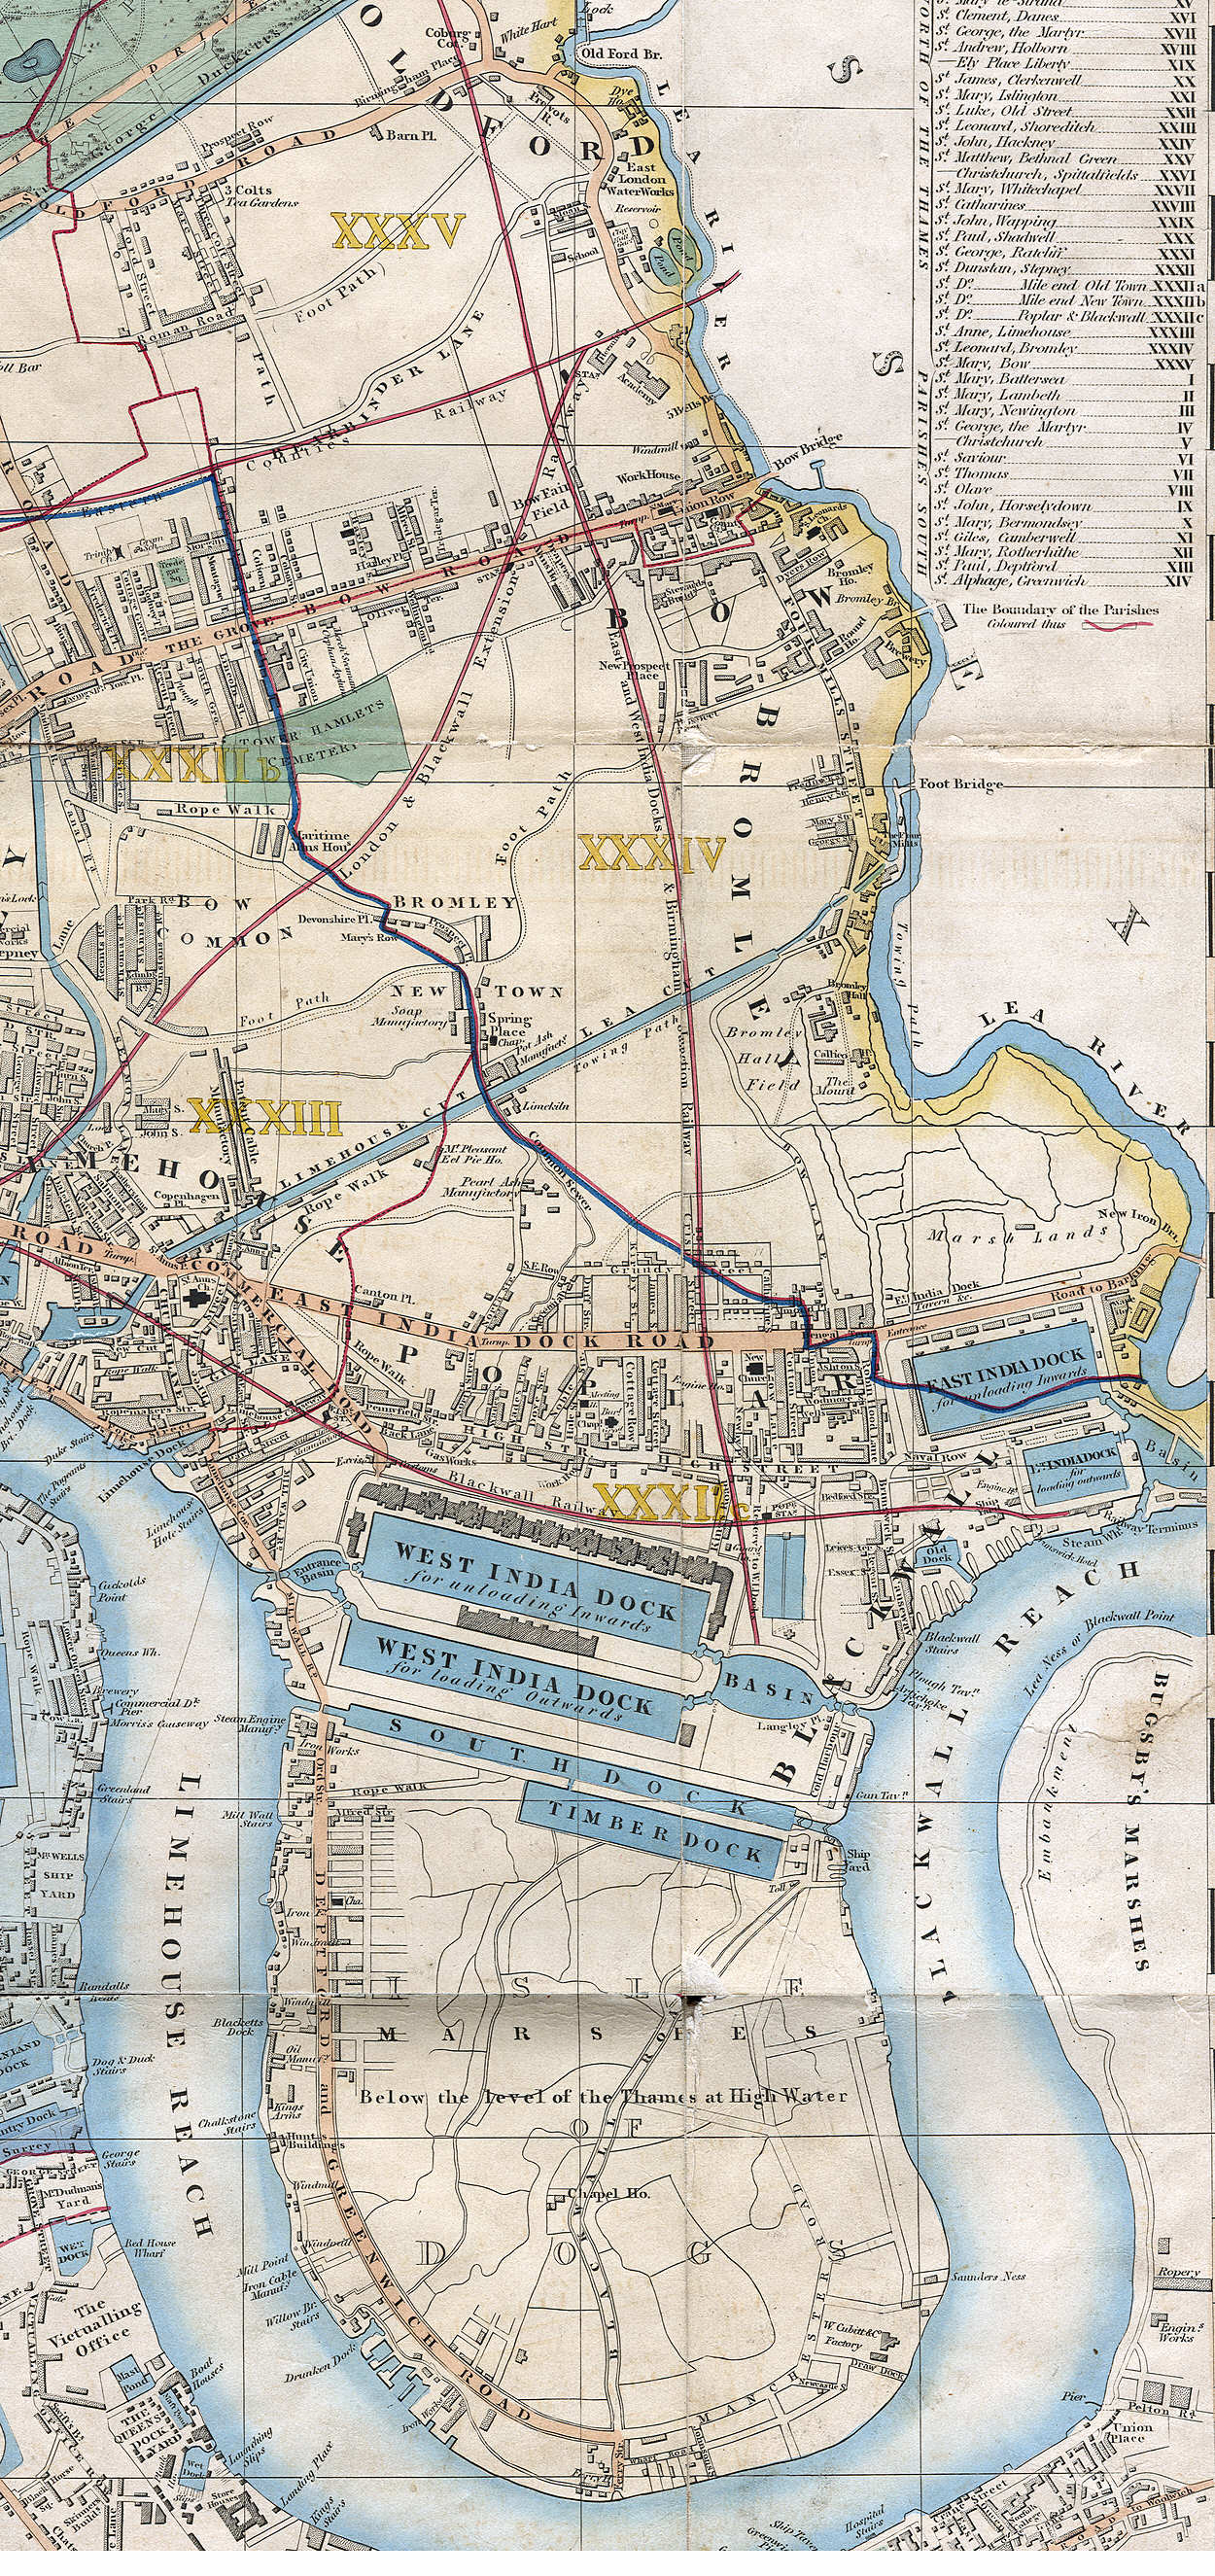 1853 - Cross, "Cross's New Plan Of London"